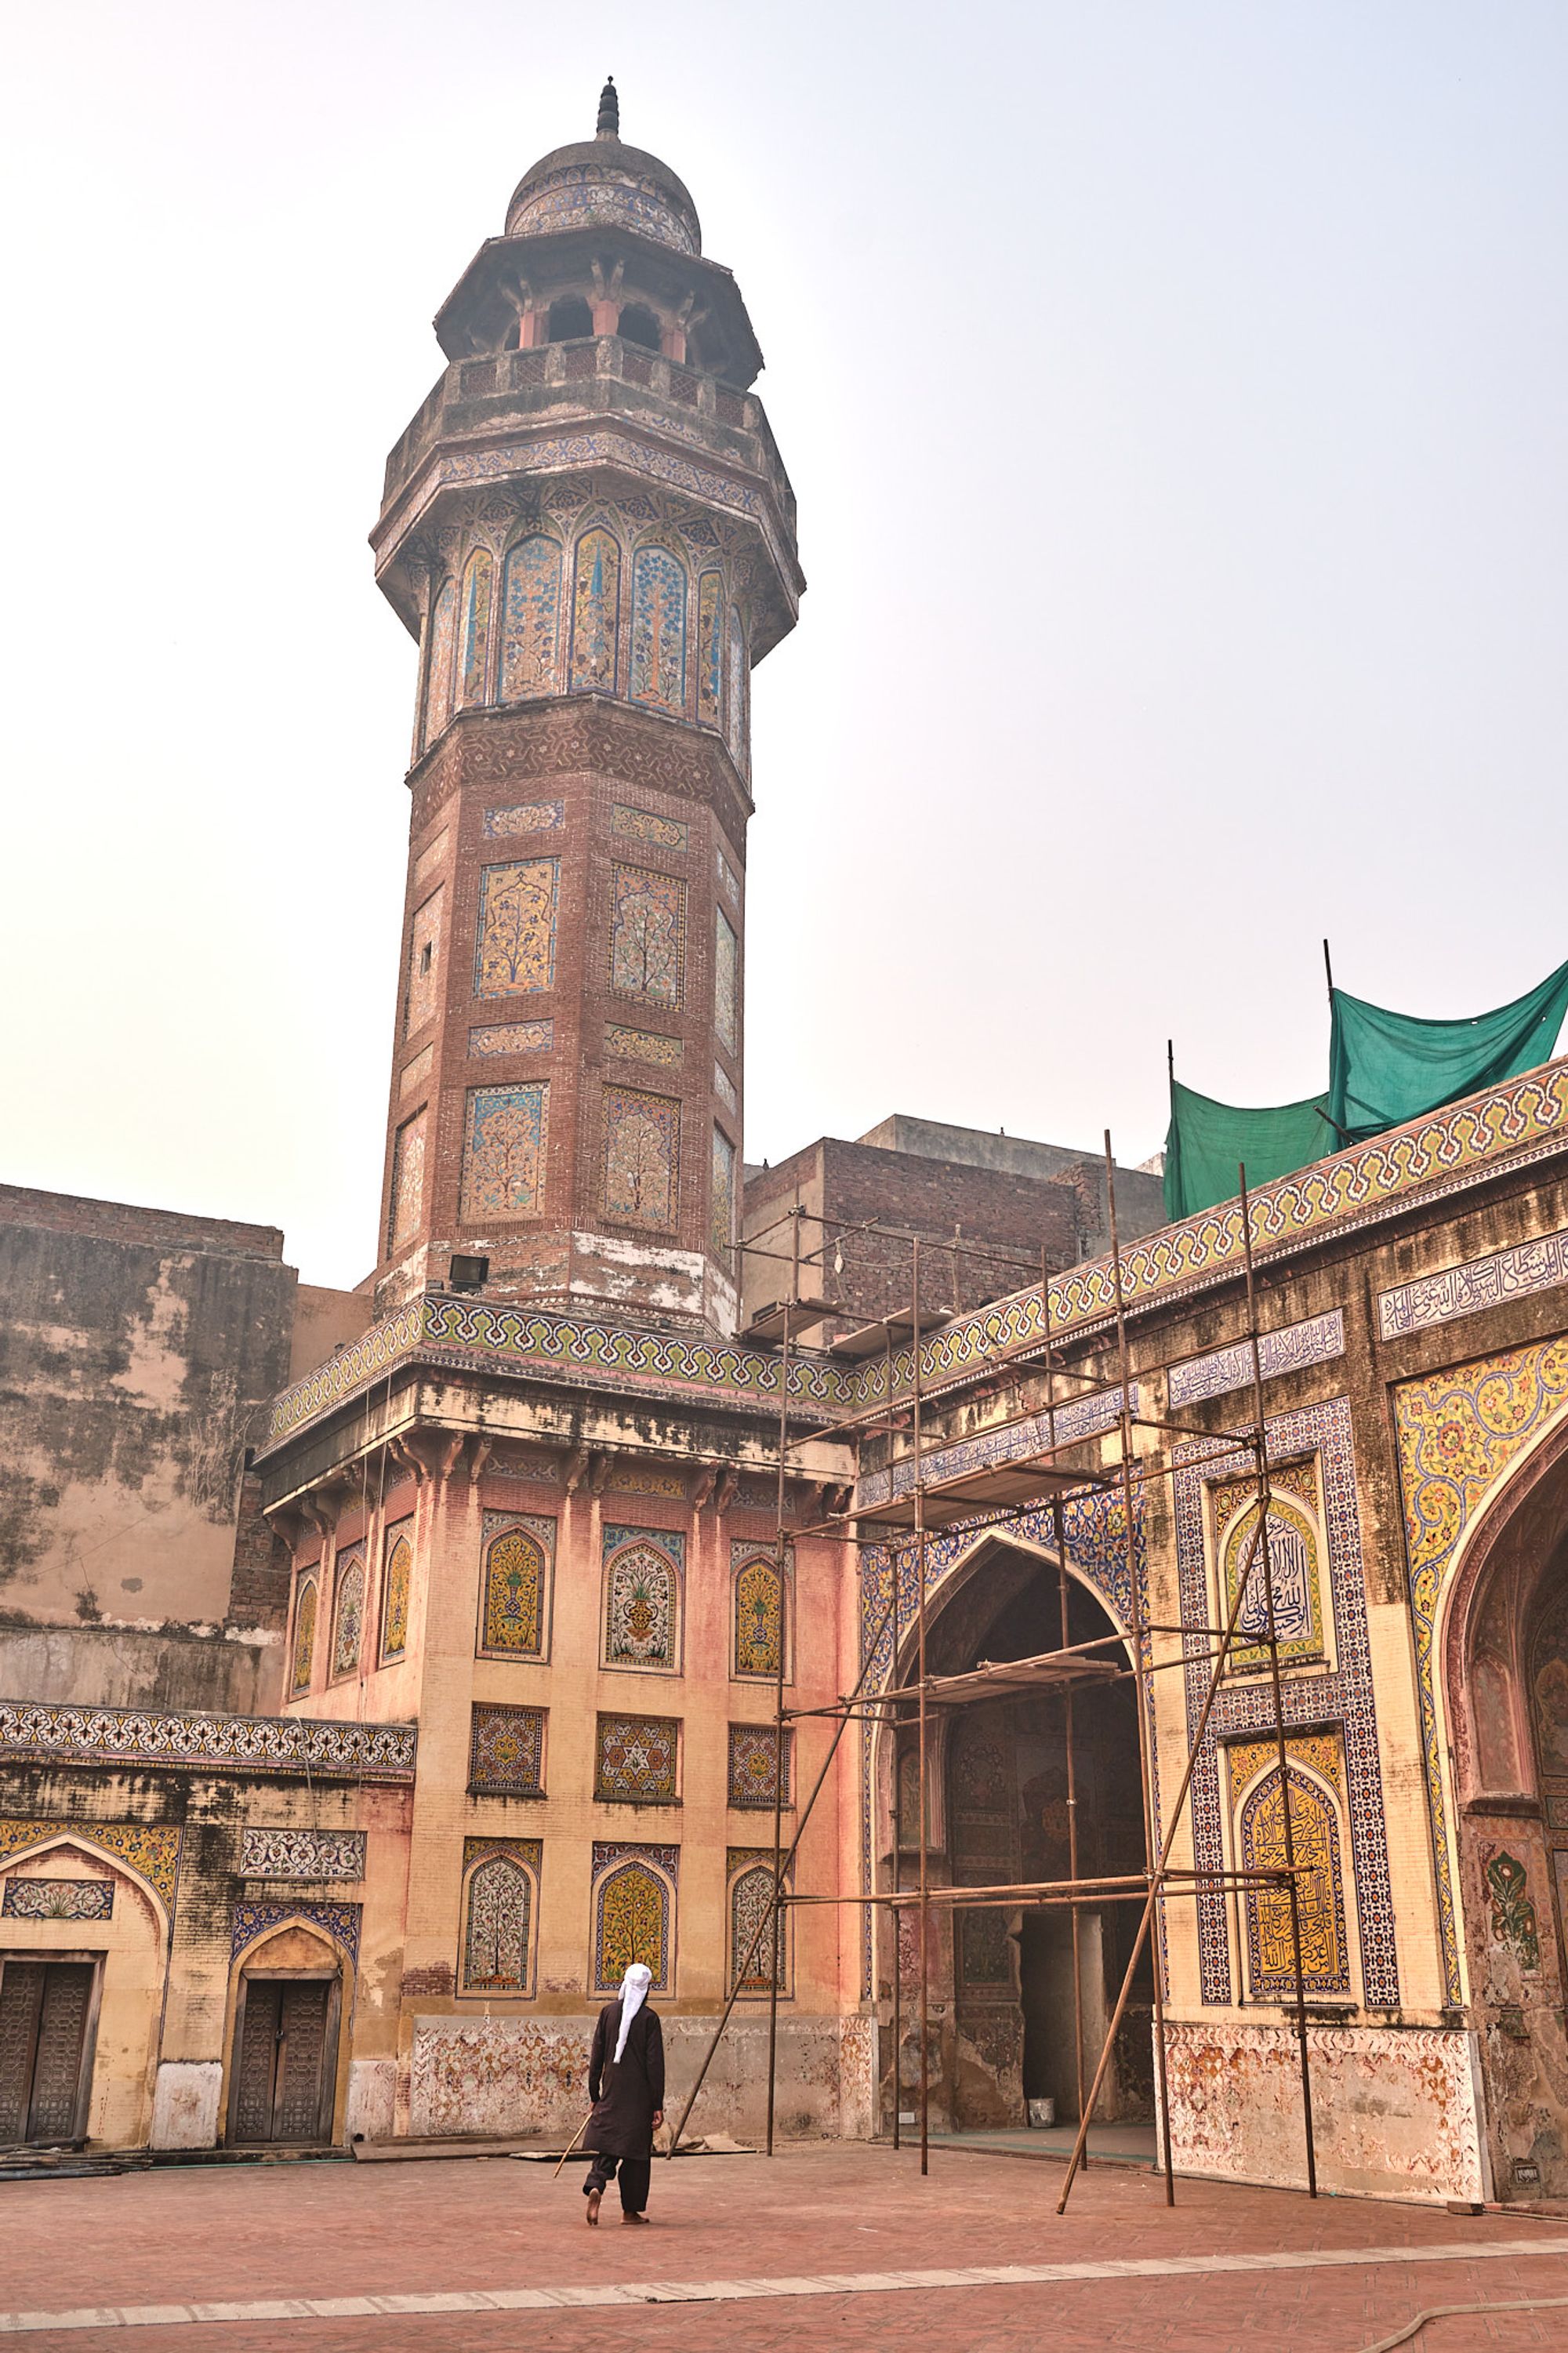 The Wazir Khan mosque